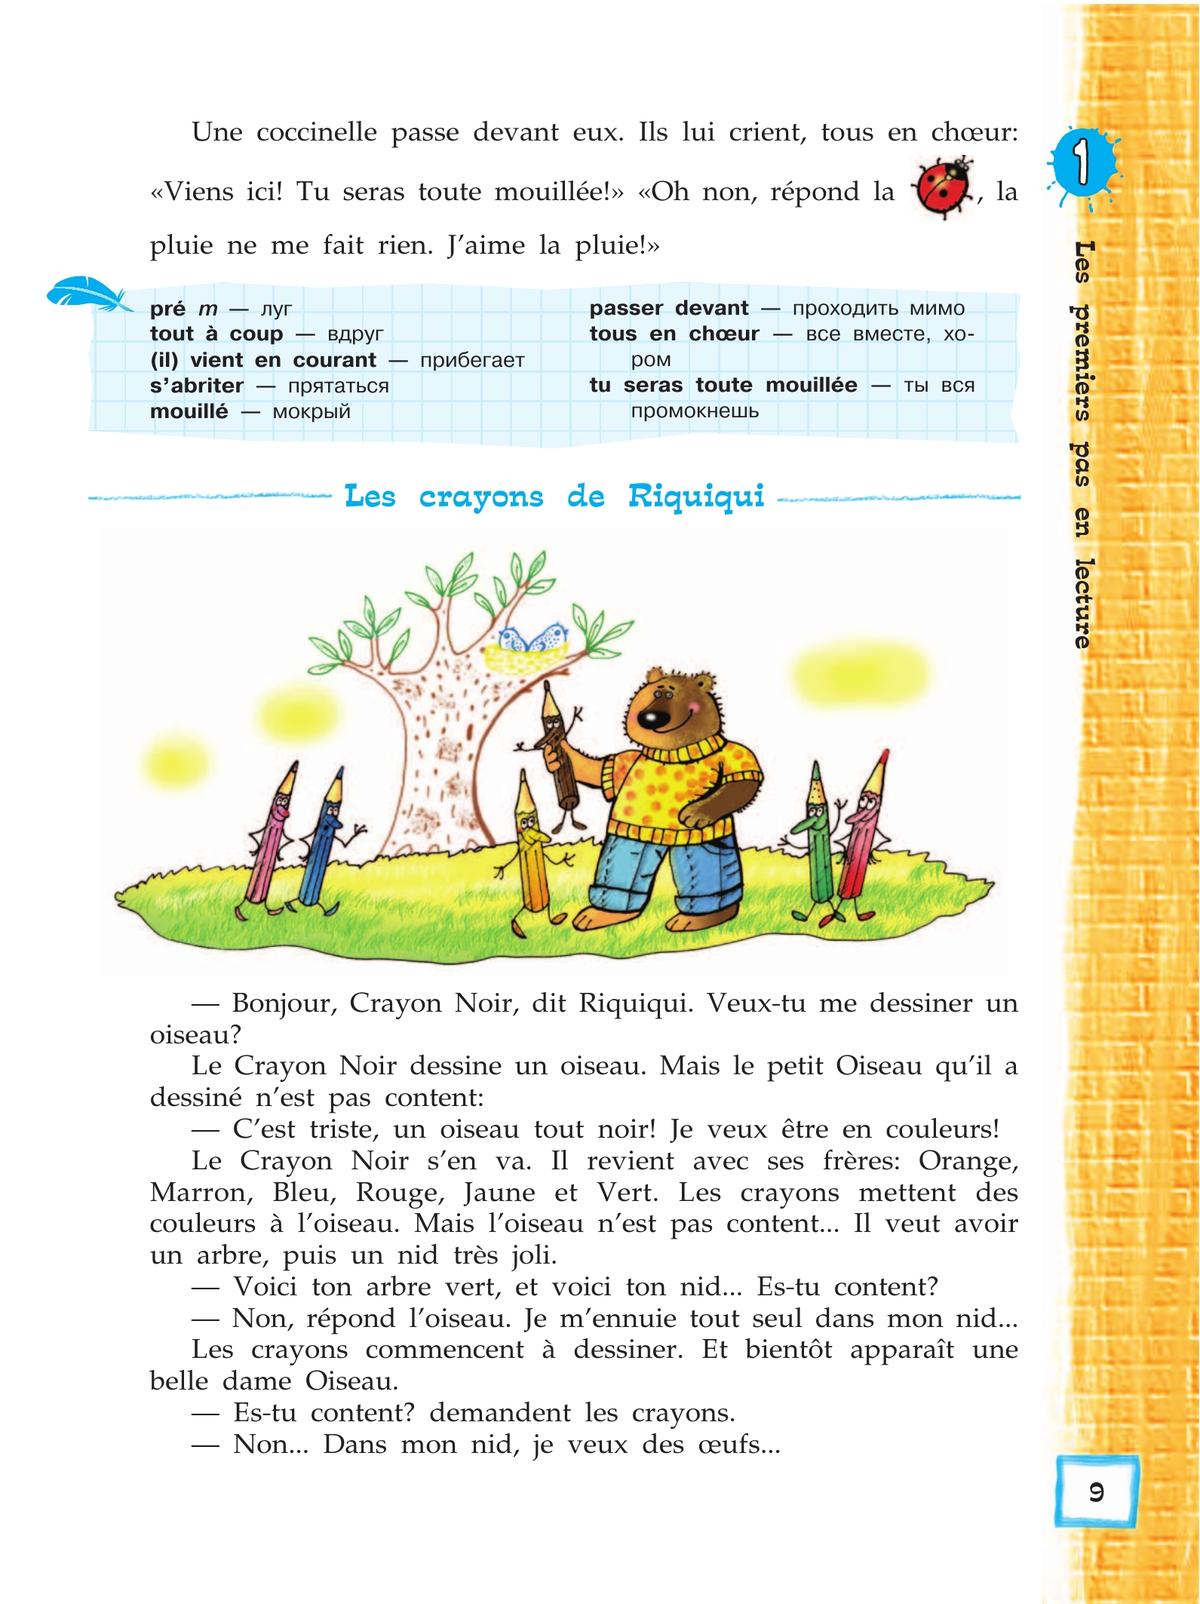 Французский язык. Второй иностранный язык. Книга для чтения. 5 класс 10